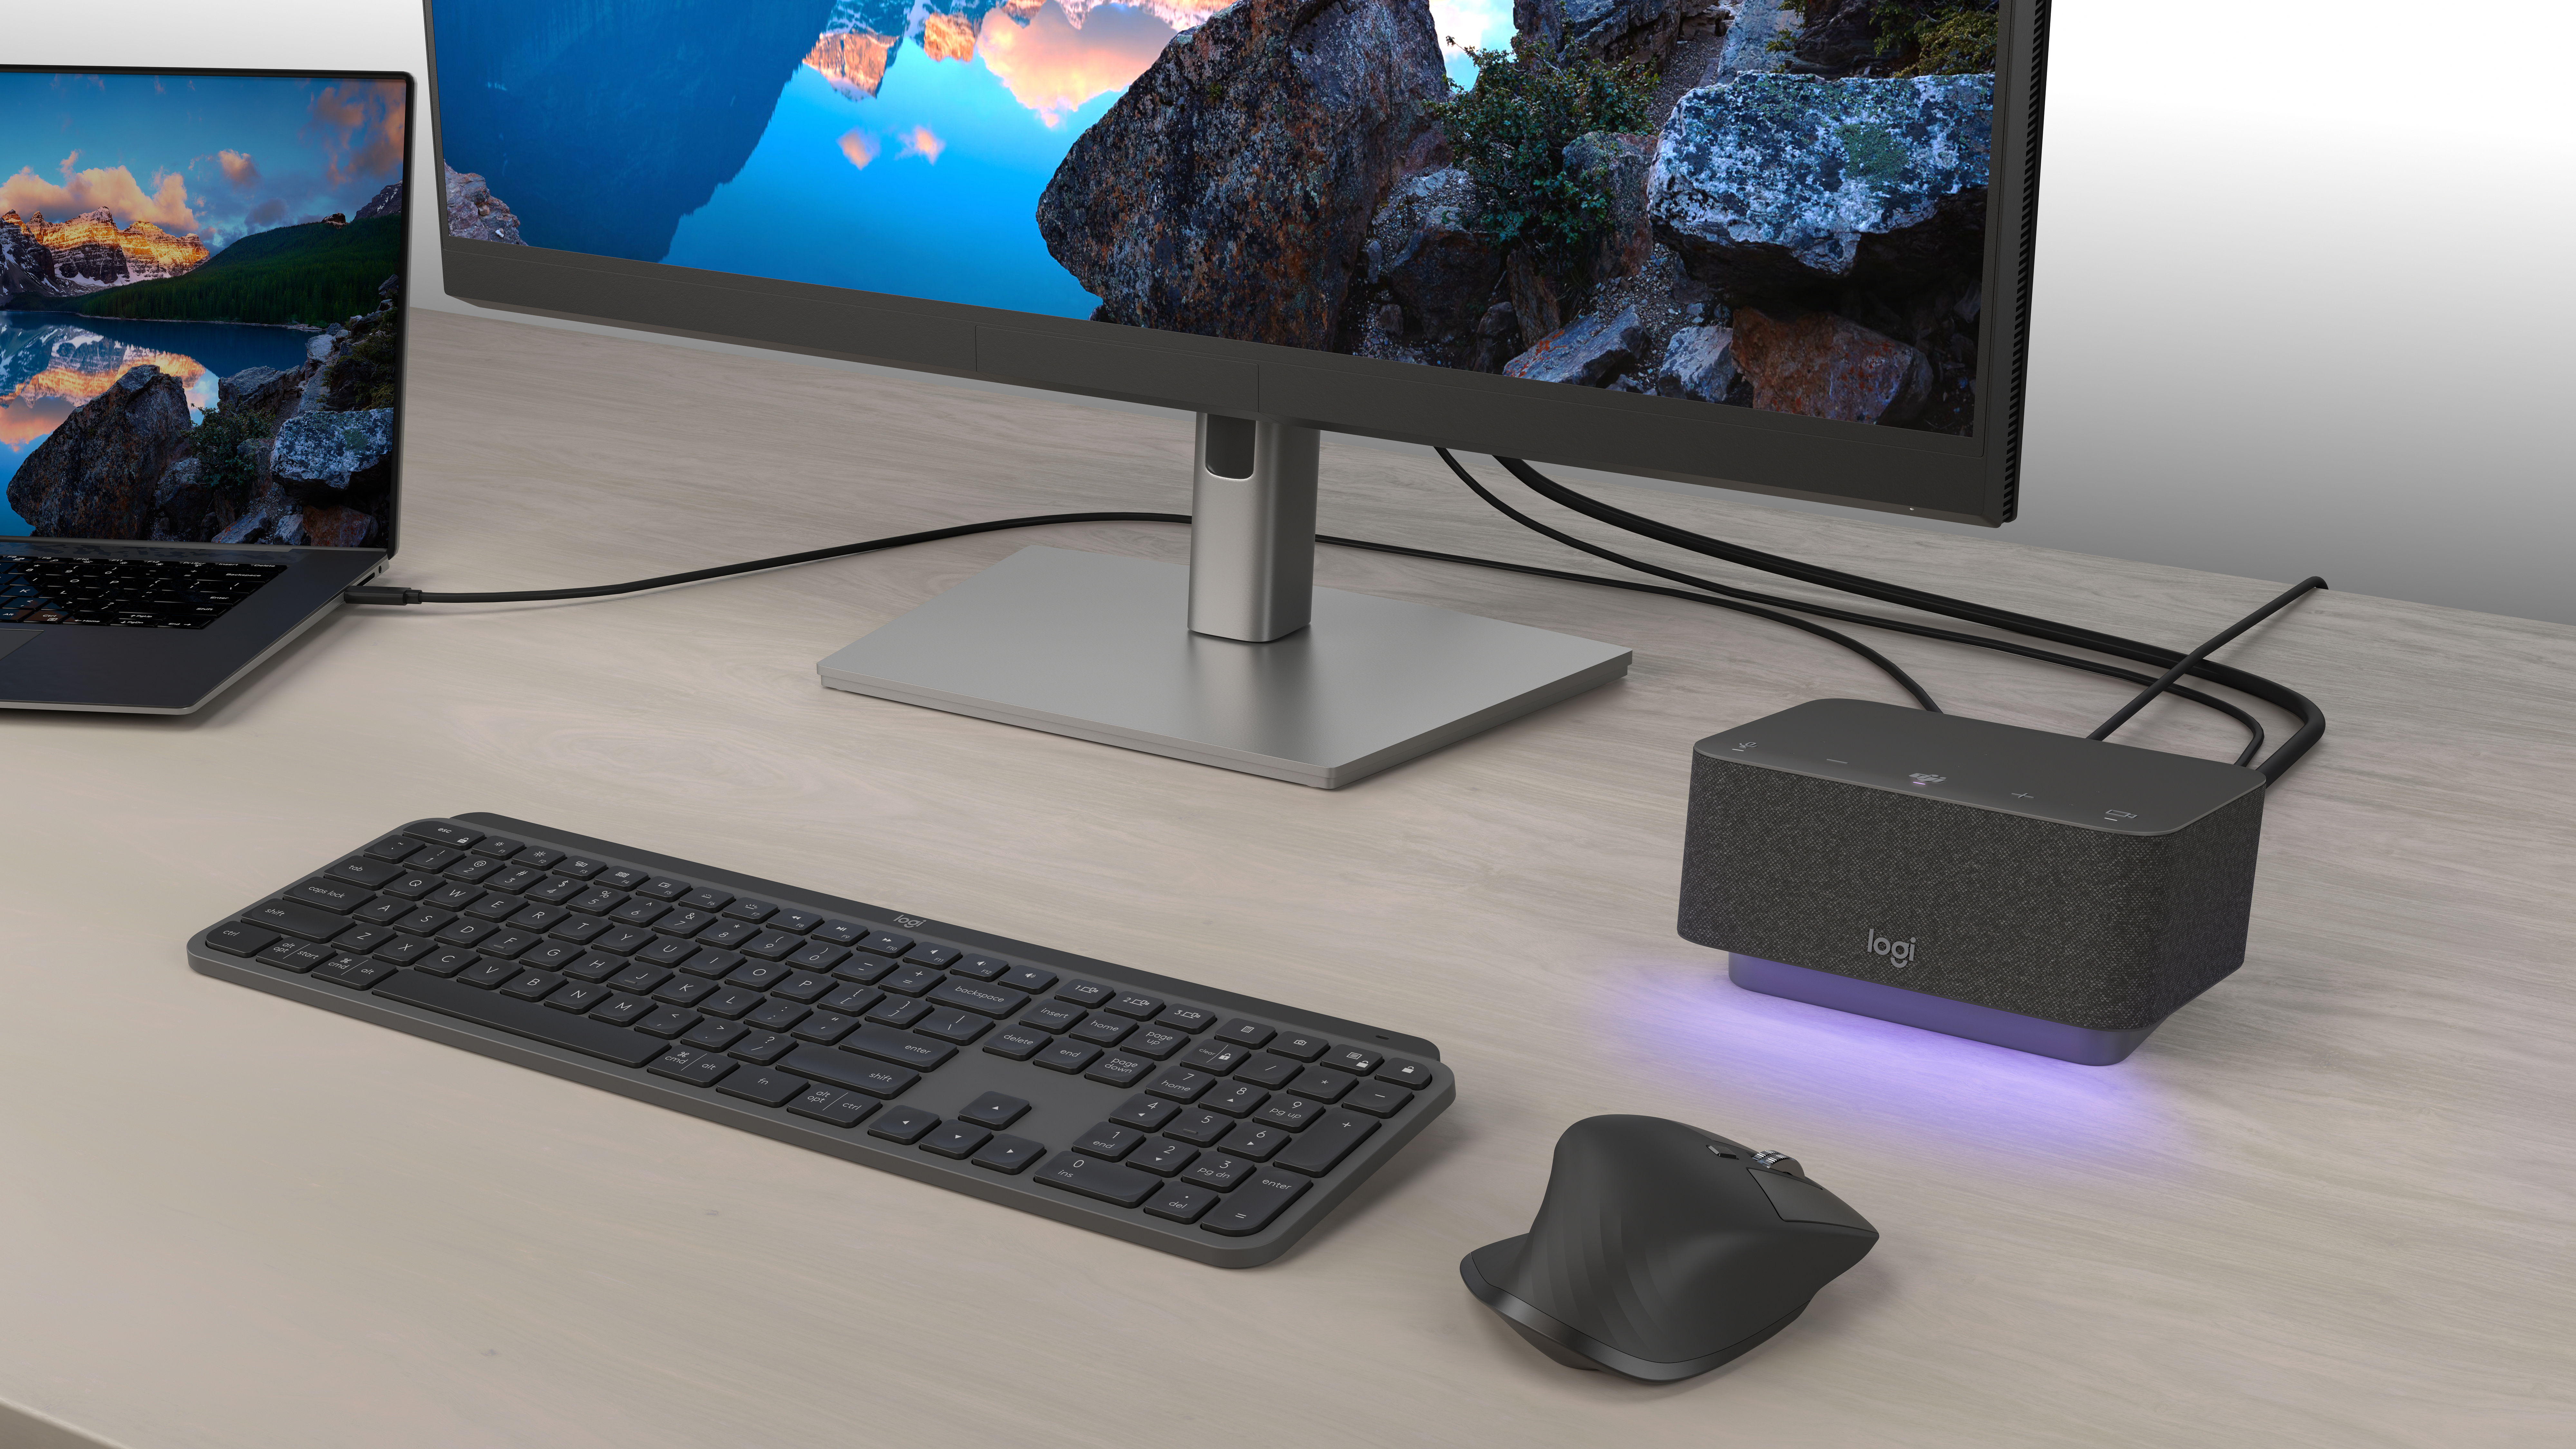 Altavoz integrado en la caja rectangular negra con luz morada tenue junto a la portátil, el monitor, el teclado inalámbrico y el ratón.